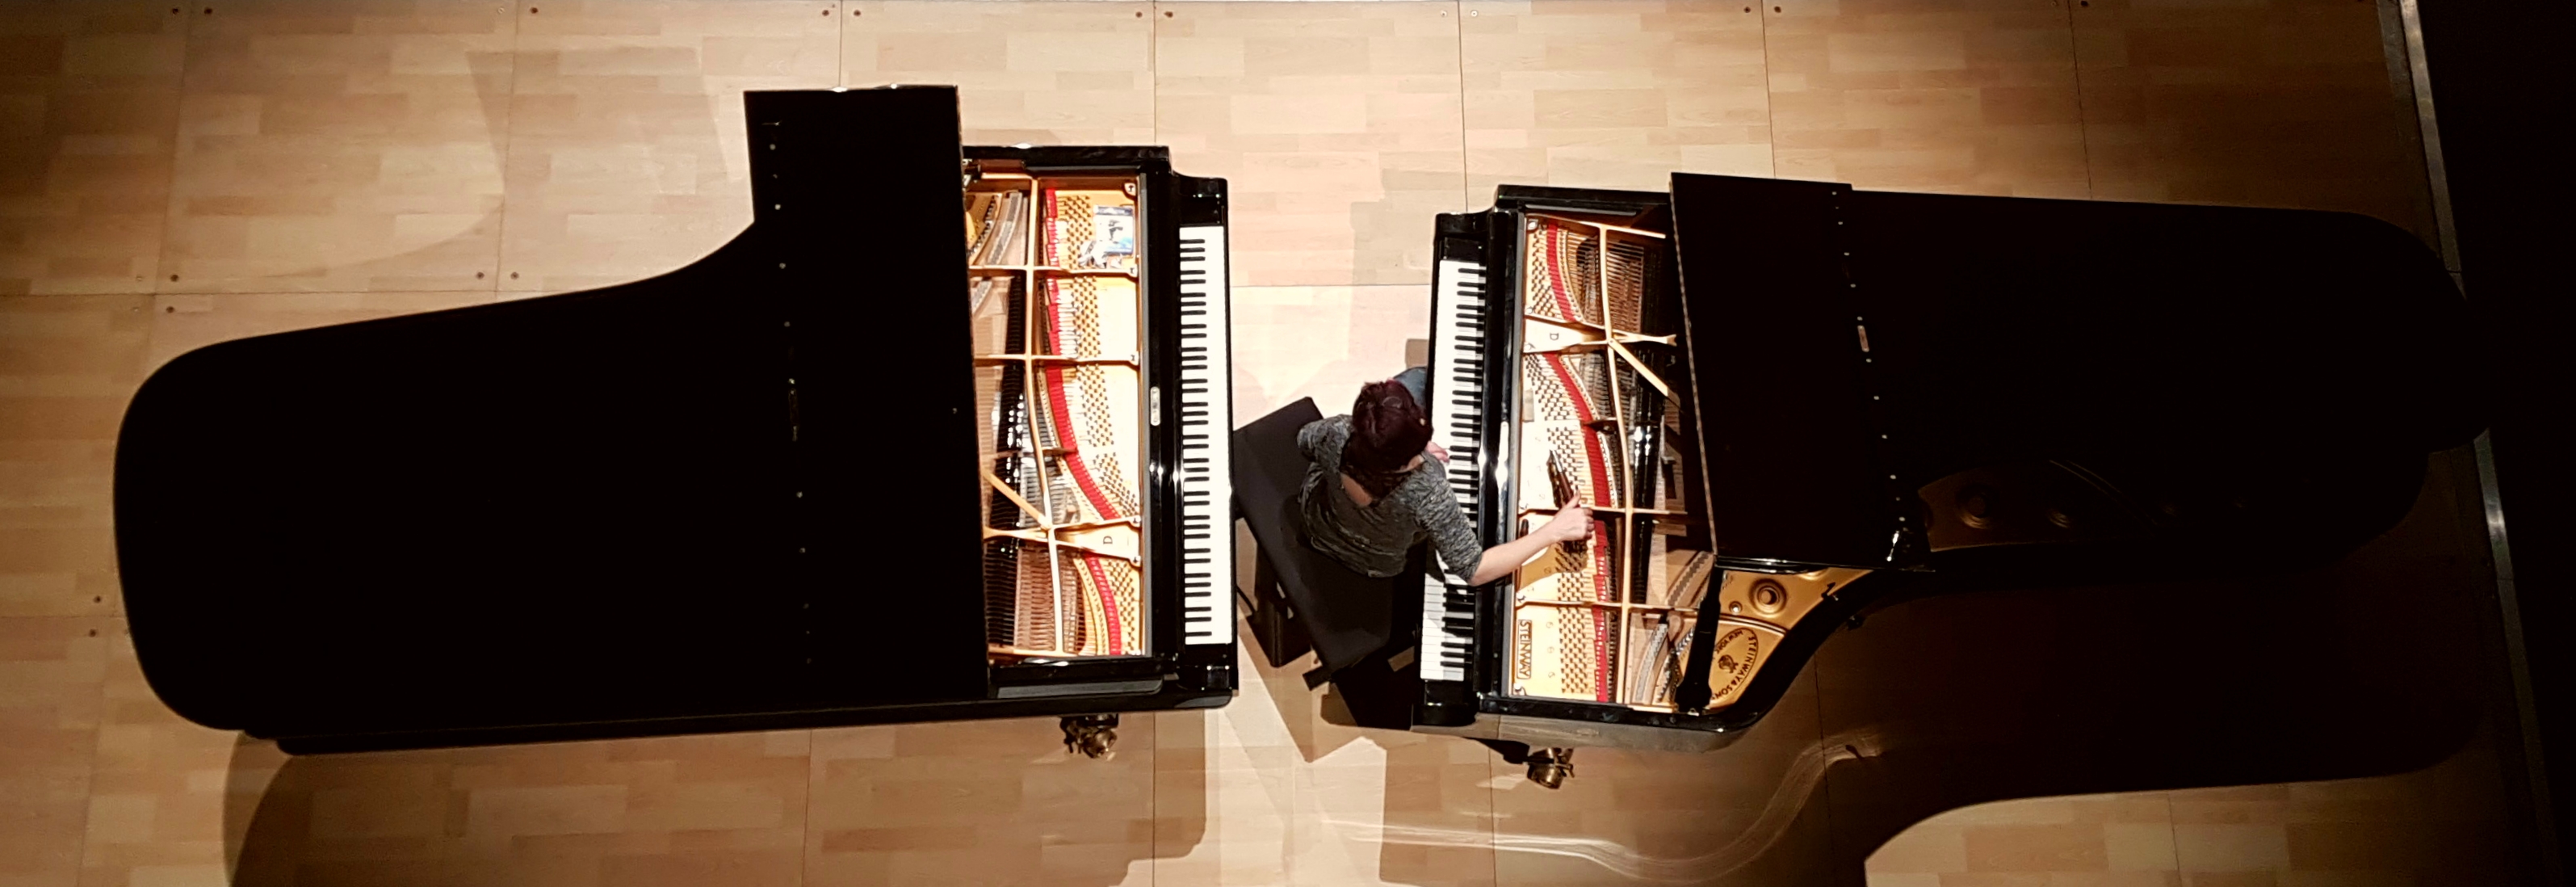 accordeur entre deux pianos de concert pour accord à l'unisson, vue d'en haut sur scène
